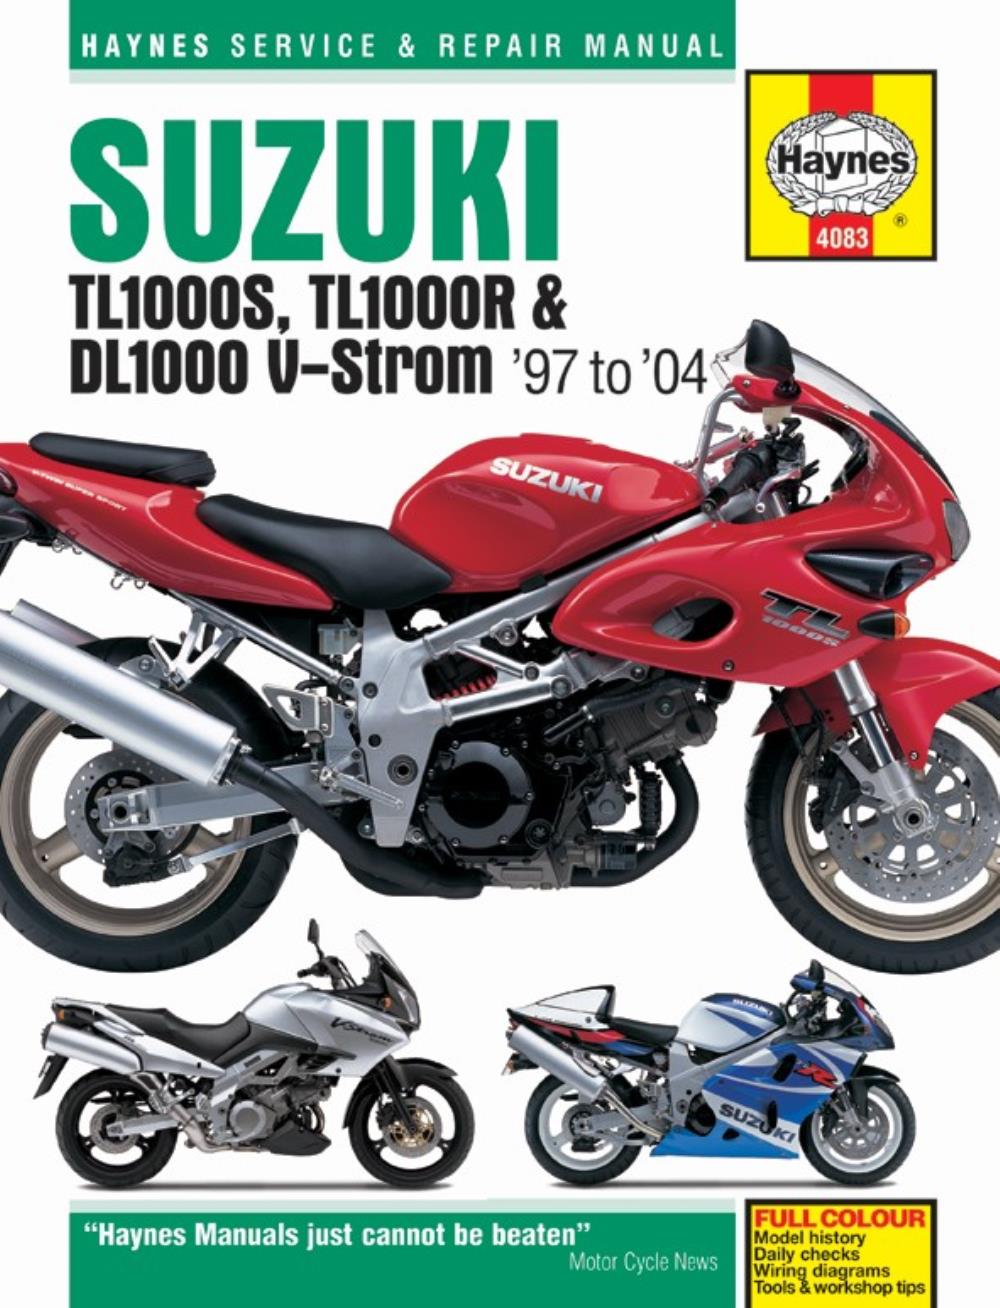 Мануалы и документация для Suzuki DL650 V-Strom